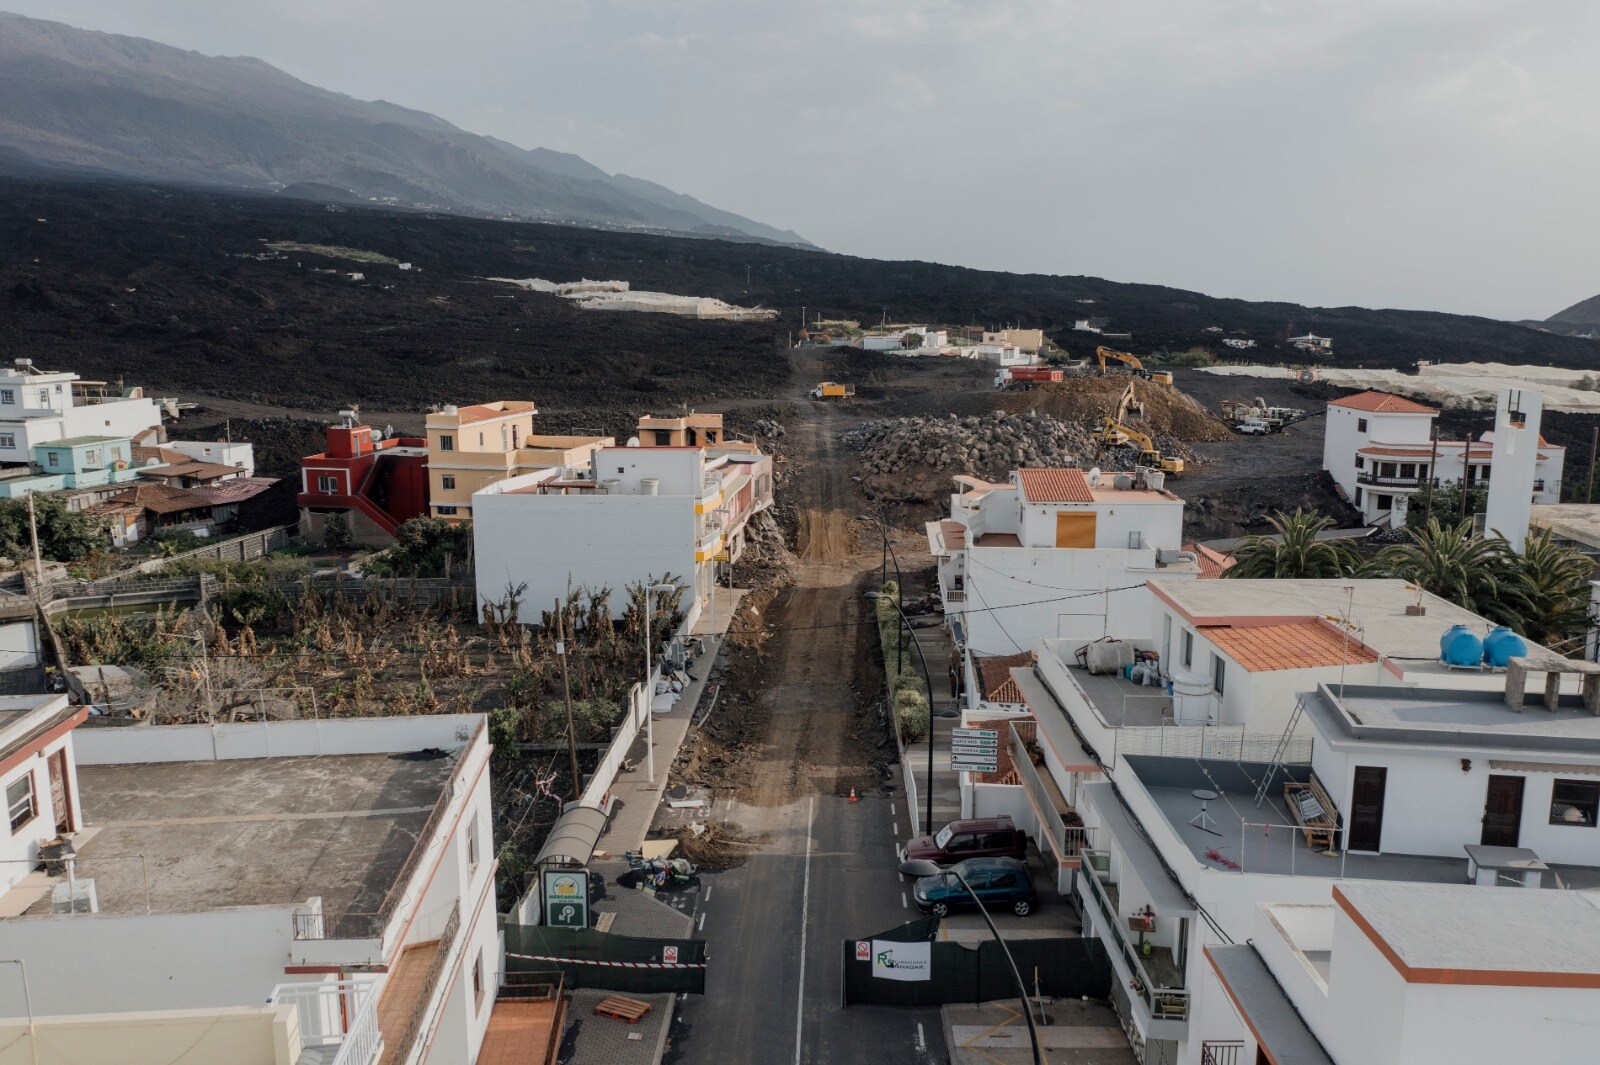 Fotos: Se intensifican los trabajos de reconstrucción de la zona del volcán